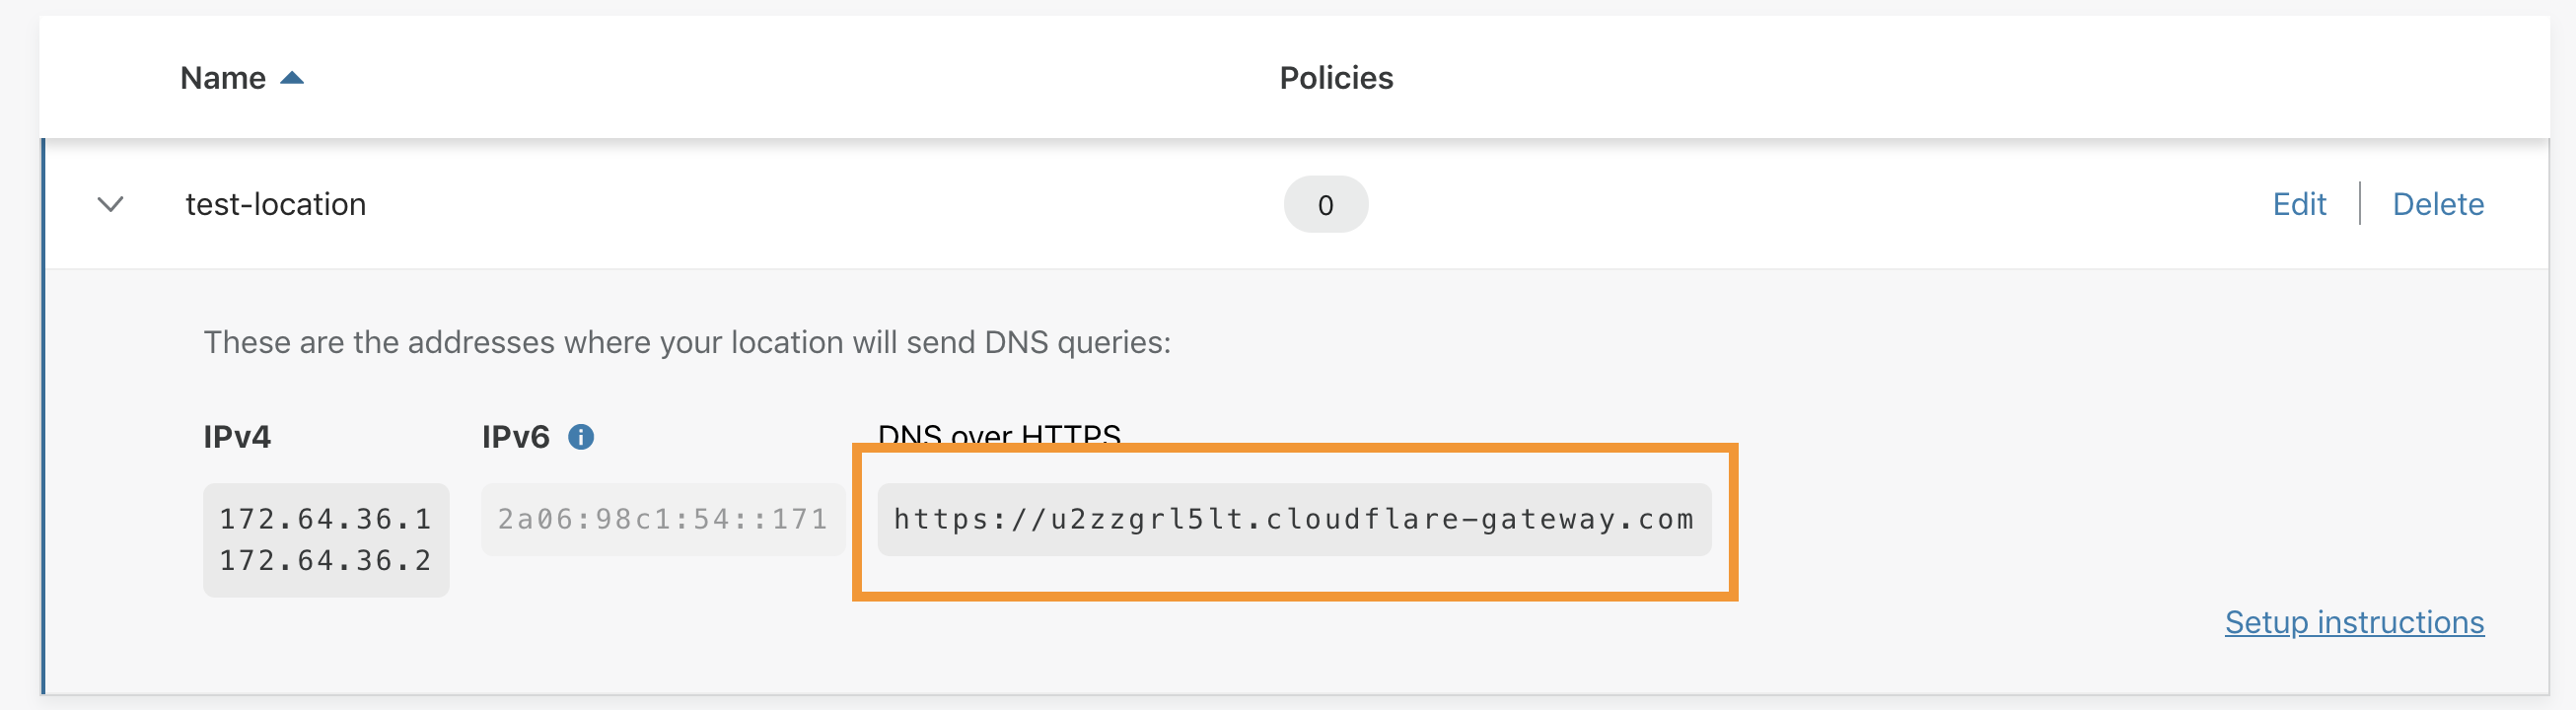 DNS over HTTPS hostname